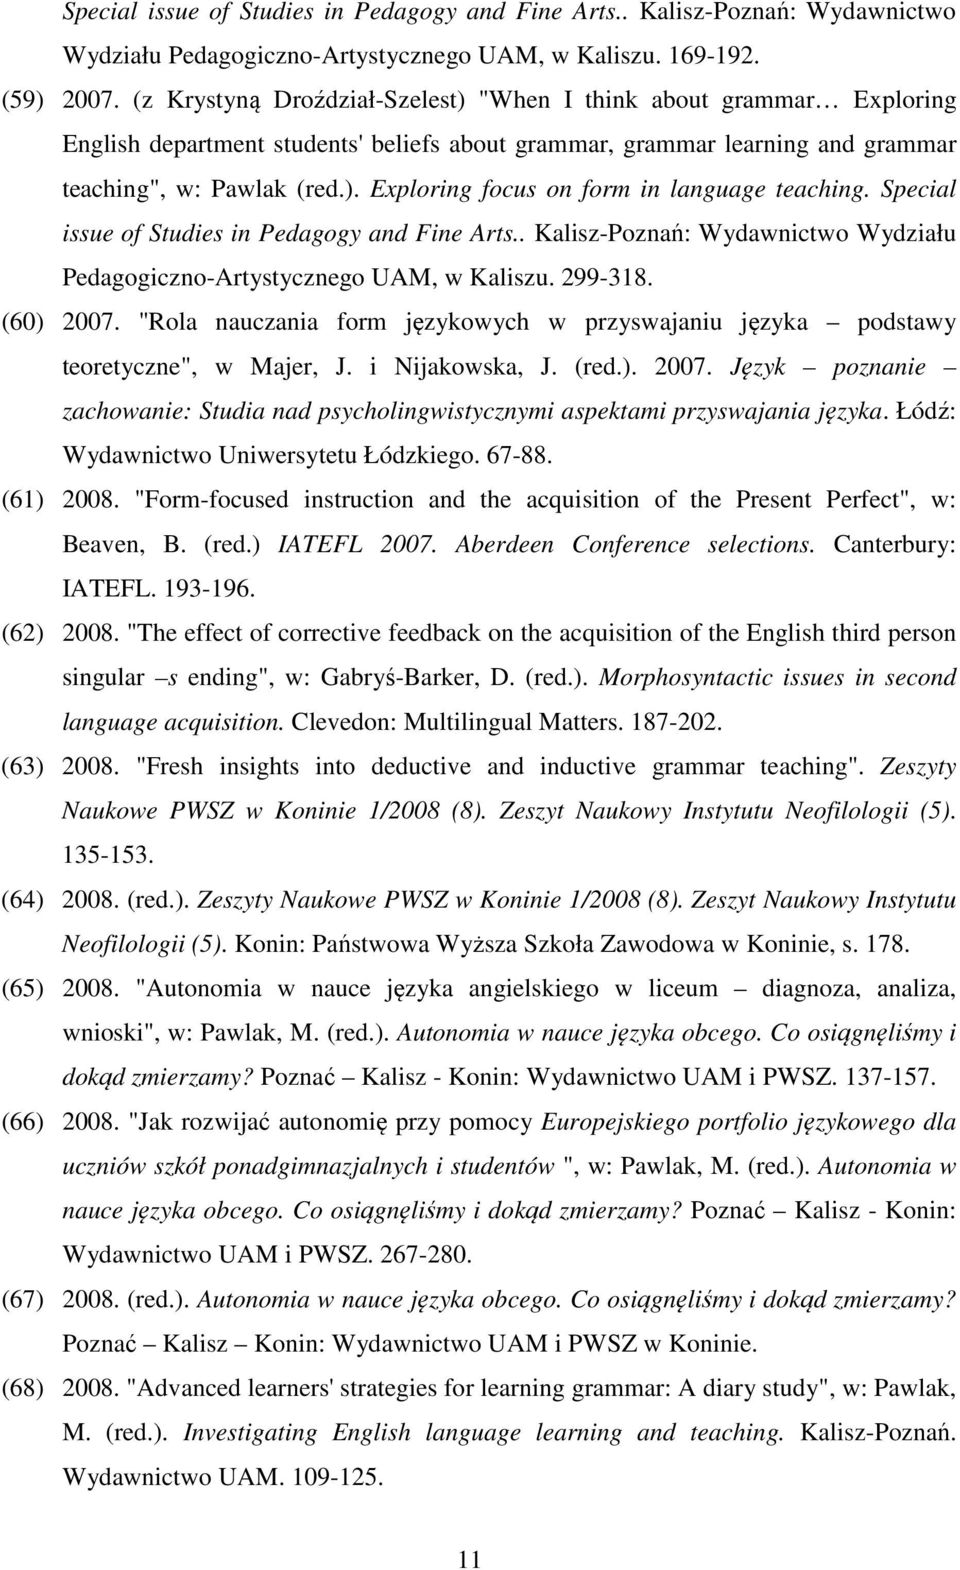 Special issue of Studies in Pedagogy and Fine Arts.. Kalisz-Poznań: Wydawnictwo Wydziału Pedagogiczno-Artystycznego UAM, w Kaliszu. 299-318. (60) 2007.